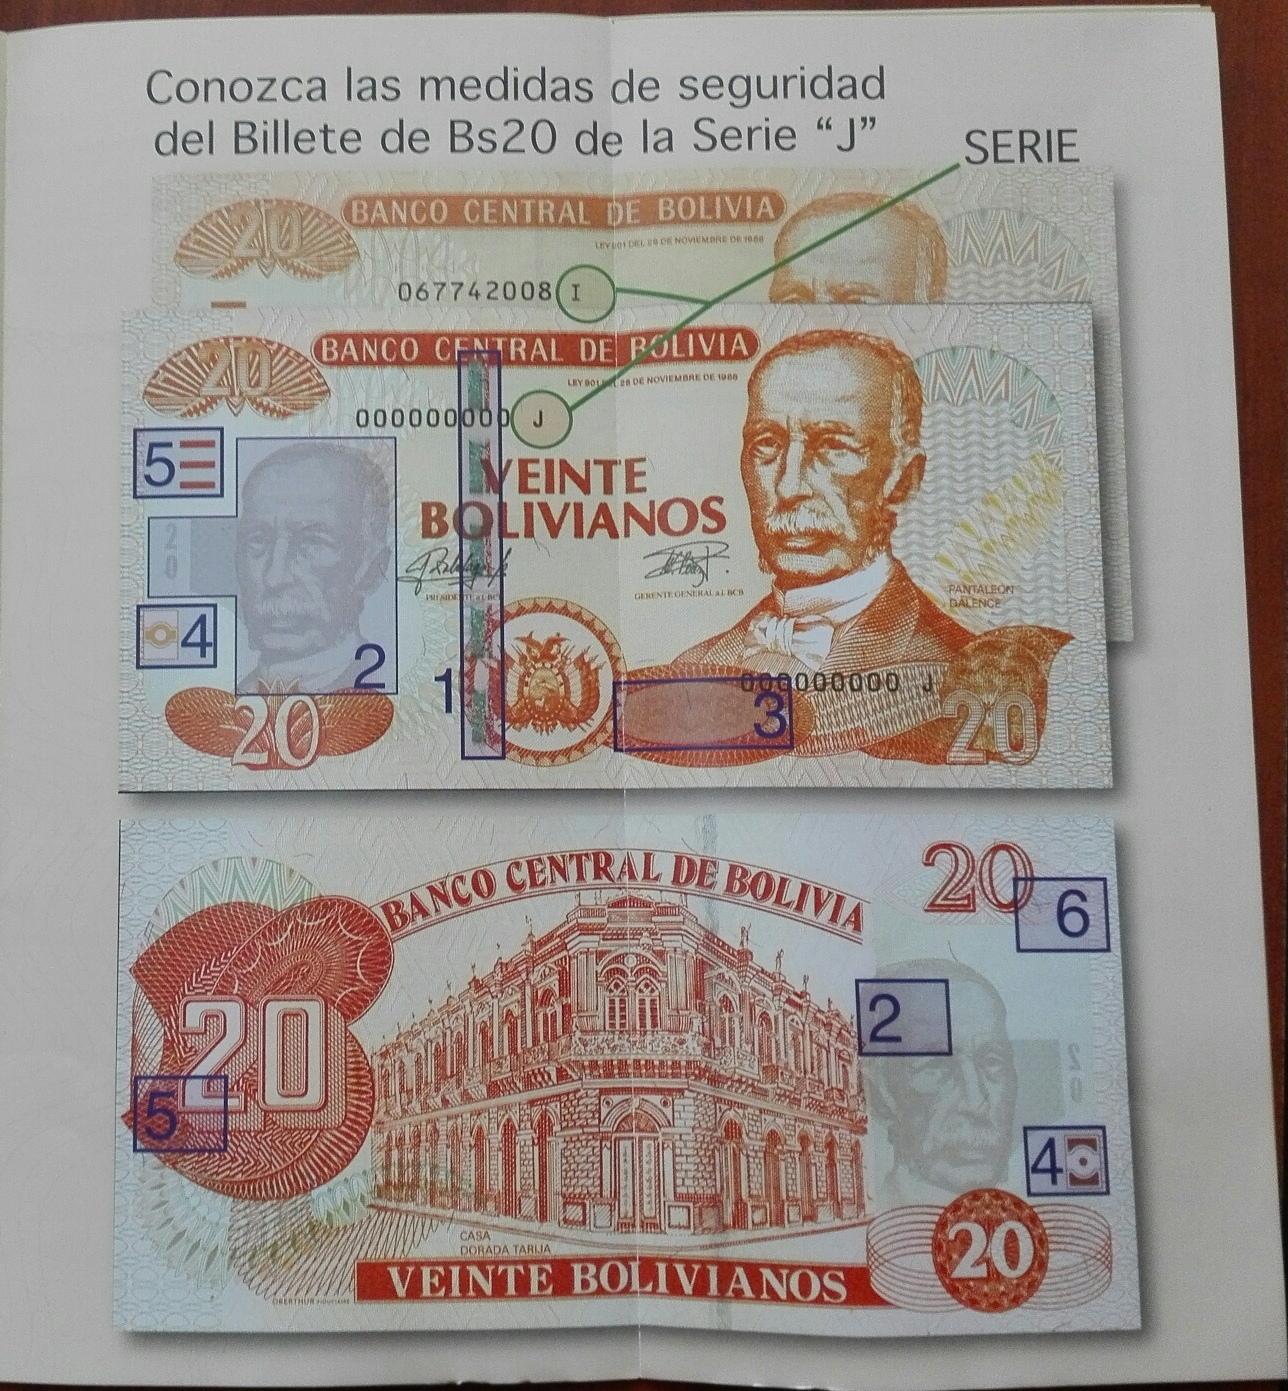 Cómo identificar billetes falsos?